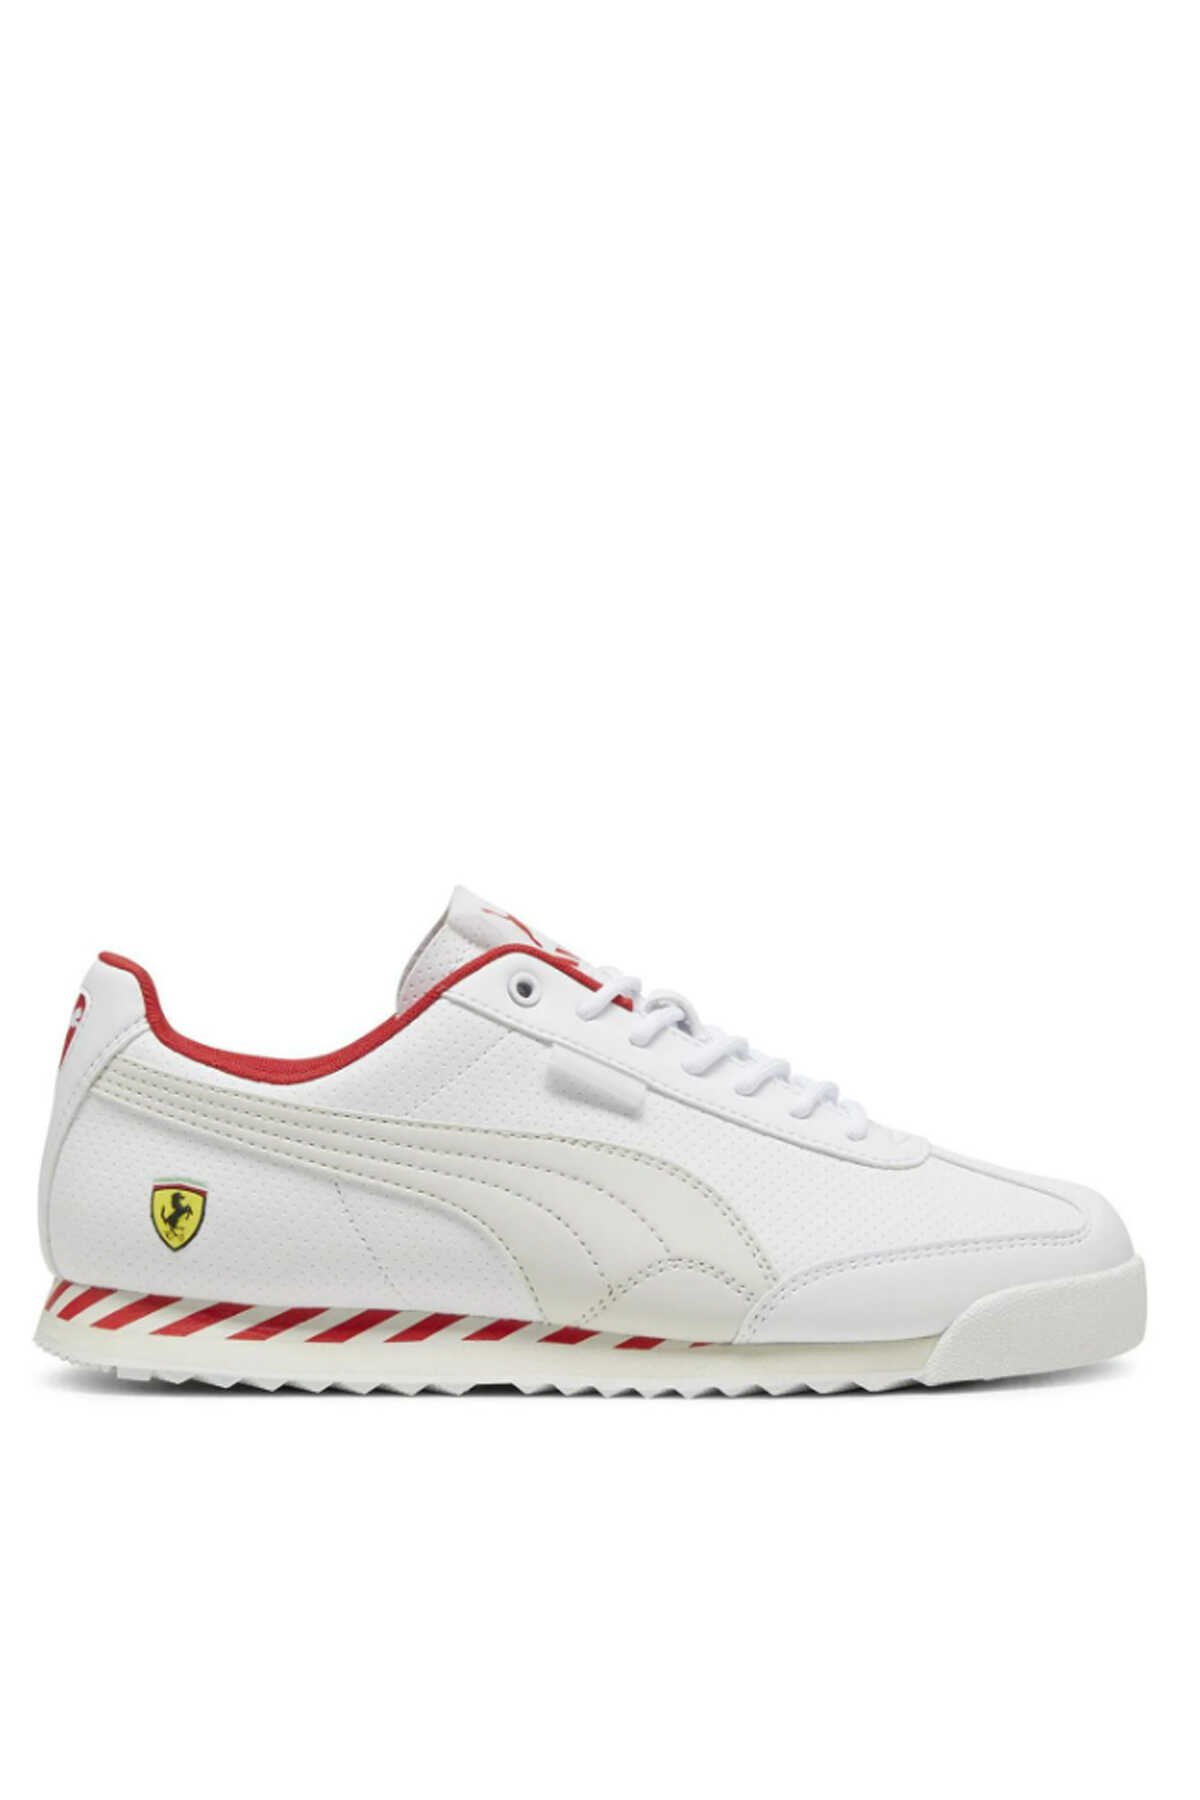 Puma - Puma Roma Via Erkek Sneaker Ayakkabı Beyaz / Bej